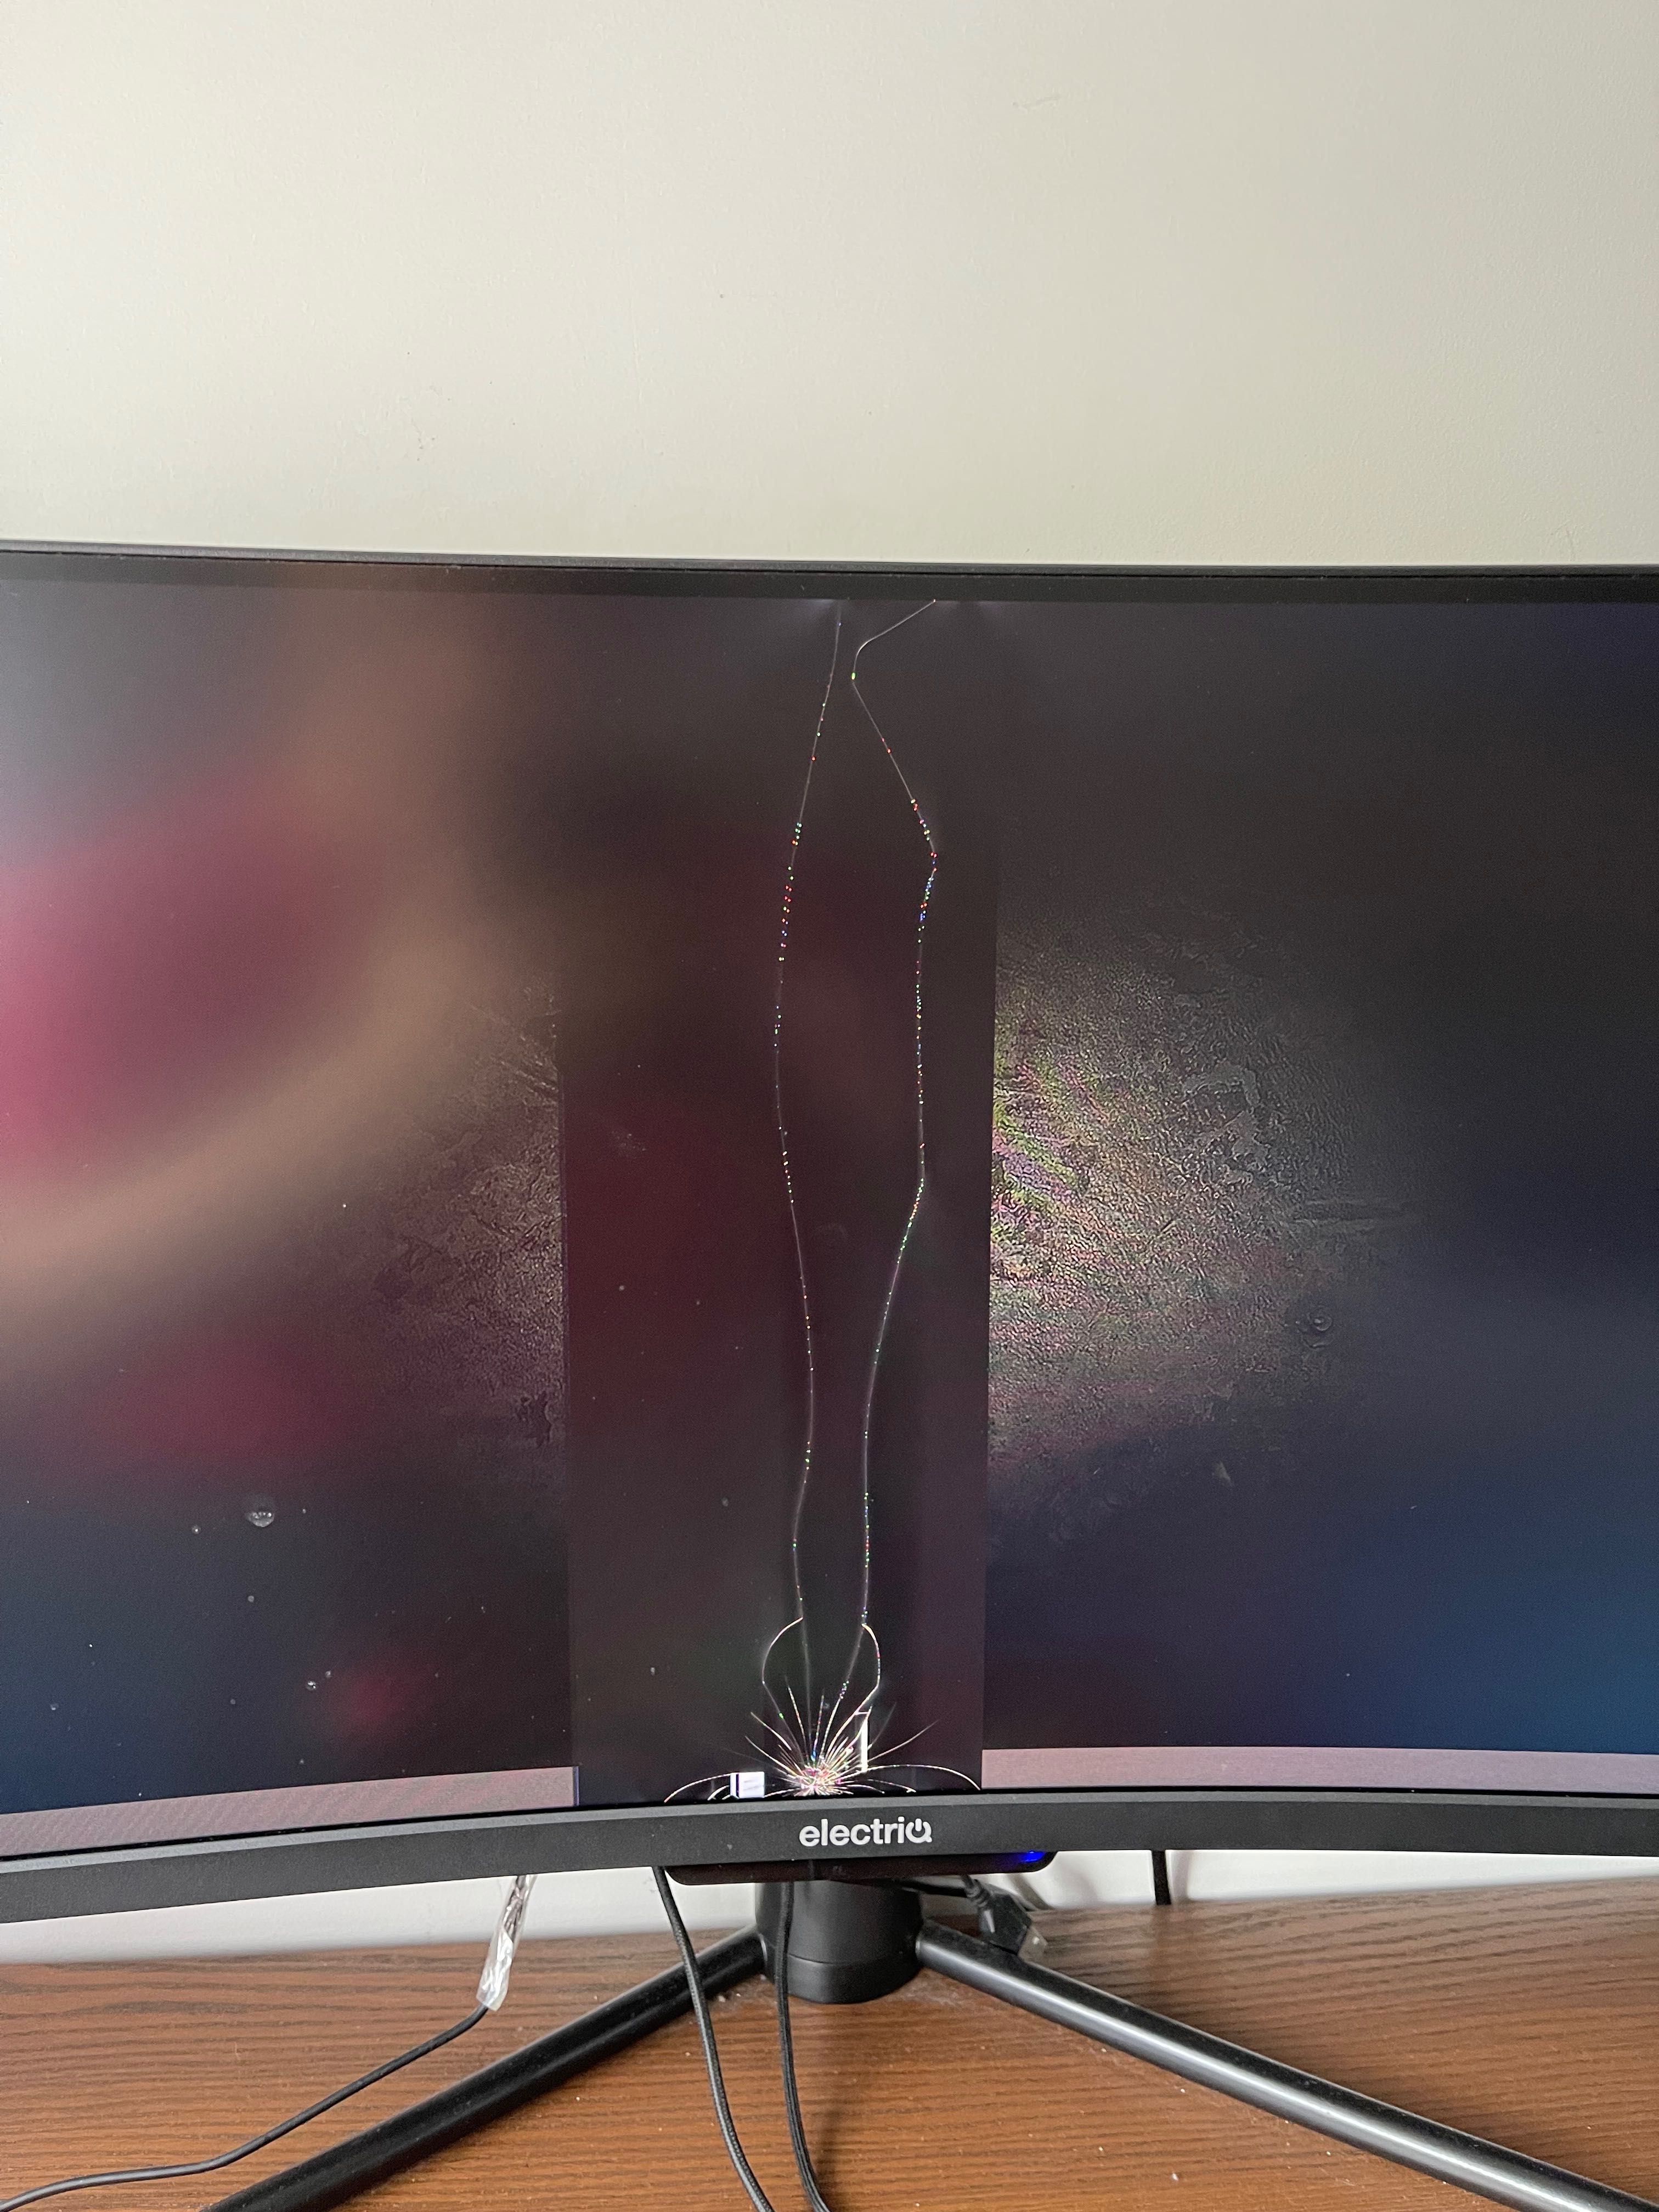 49” broken screen monitor